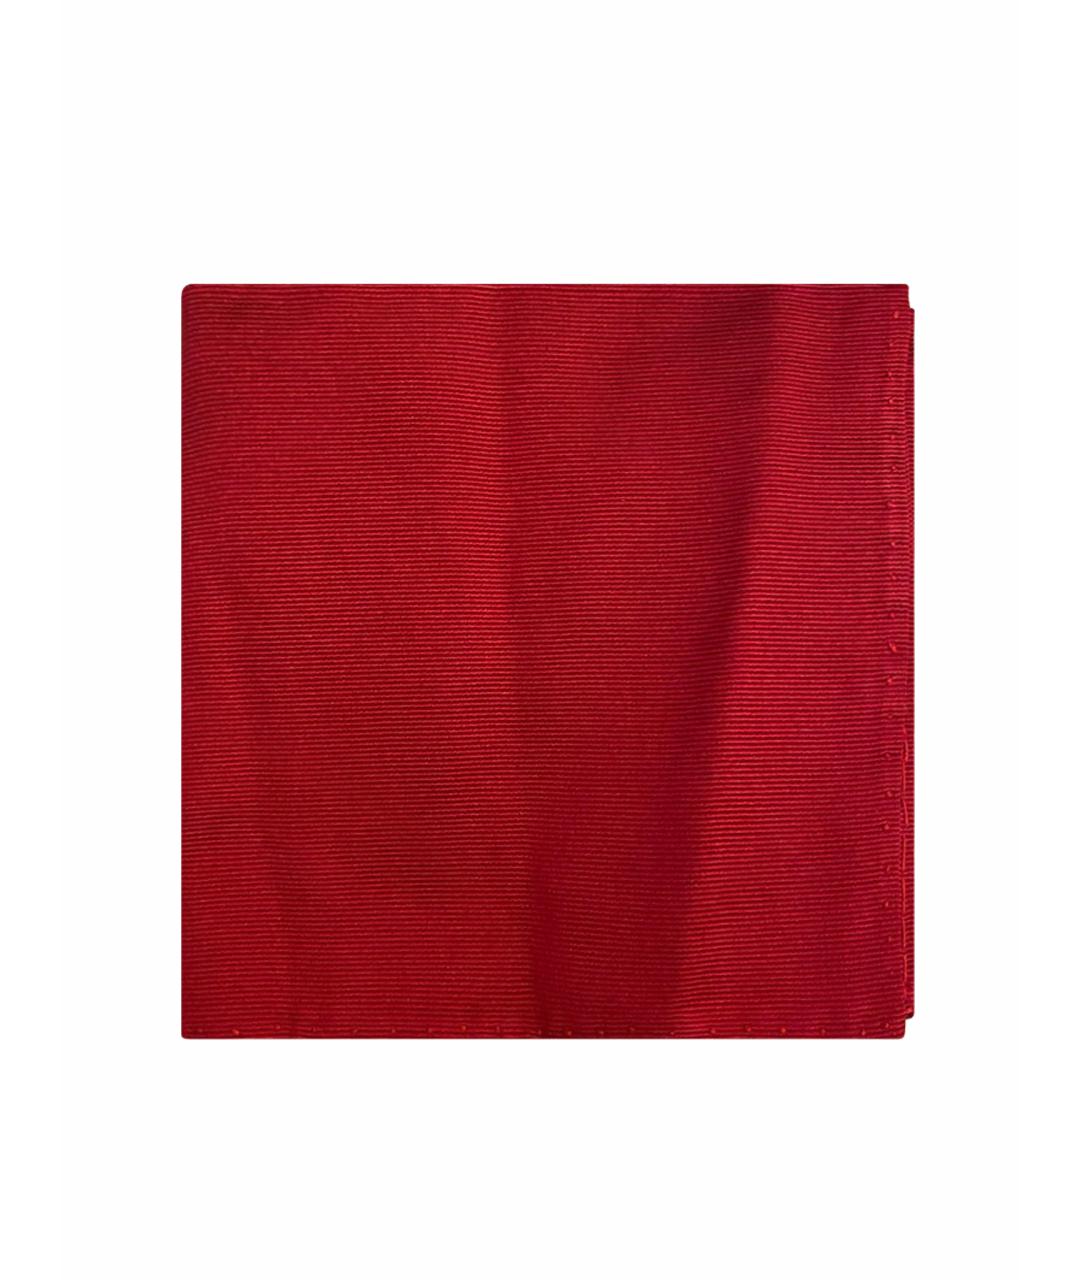 FINAMORE 1925 NAPOLI Красный шелковый платок, фото 1